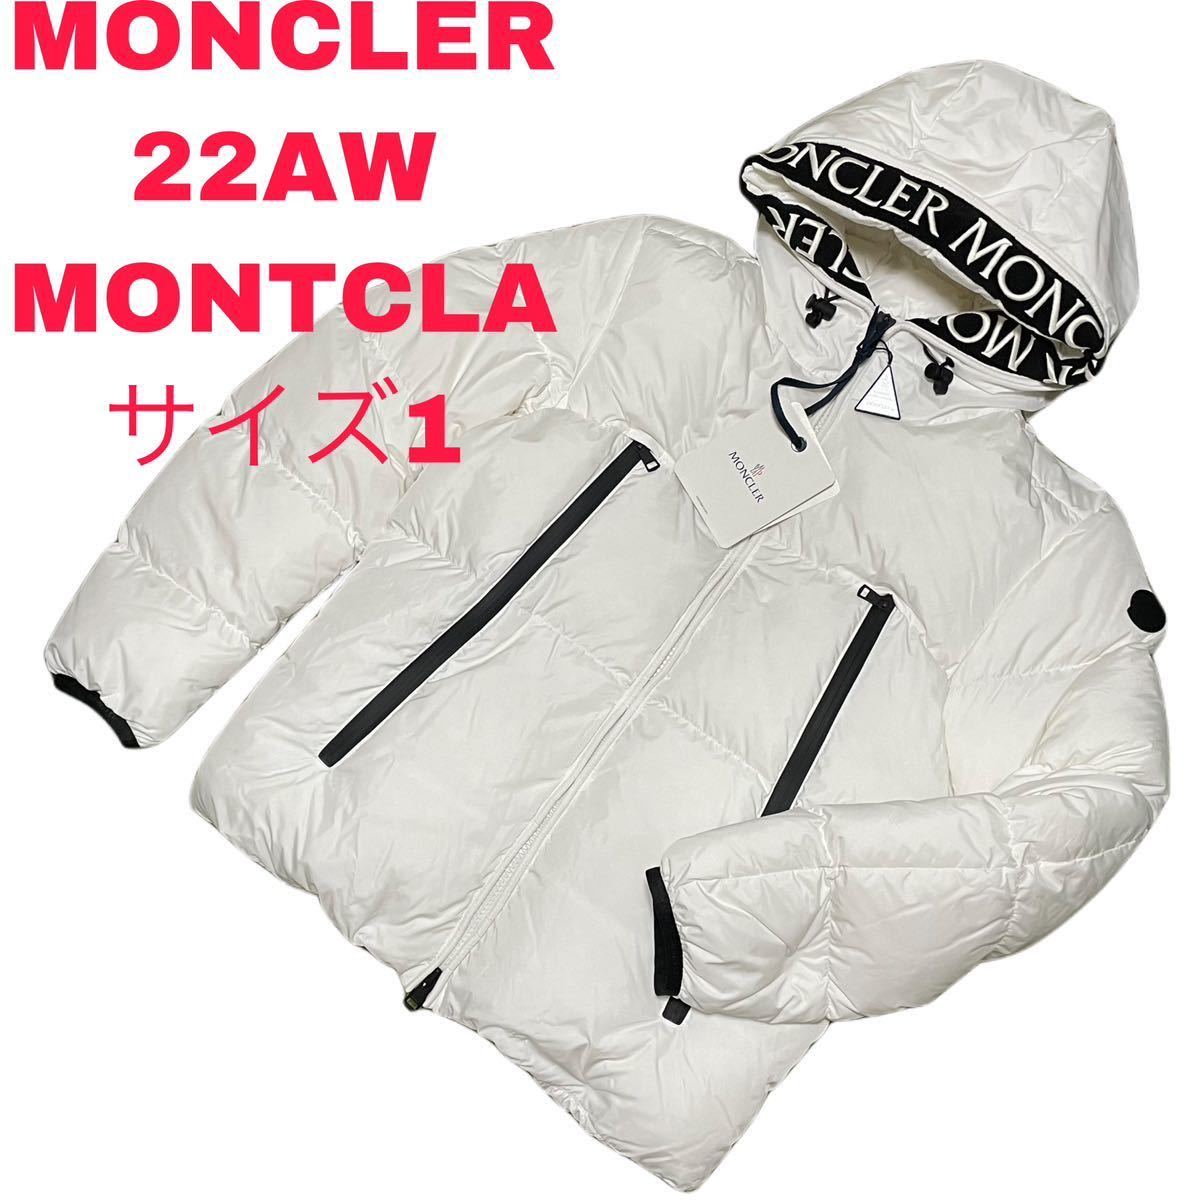 【新品】MONCLER 22AW MONTCLA モンクラ ダウンジャケット 1 モンクレール アウター ブルゾン THE NORTH FACE ジャケット